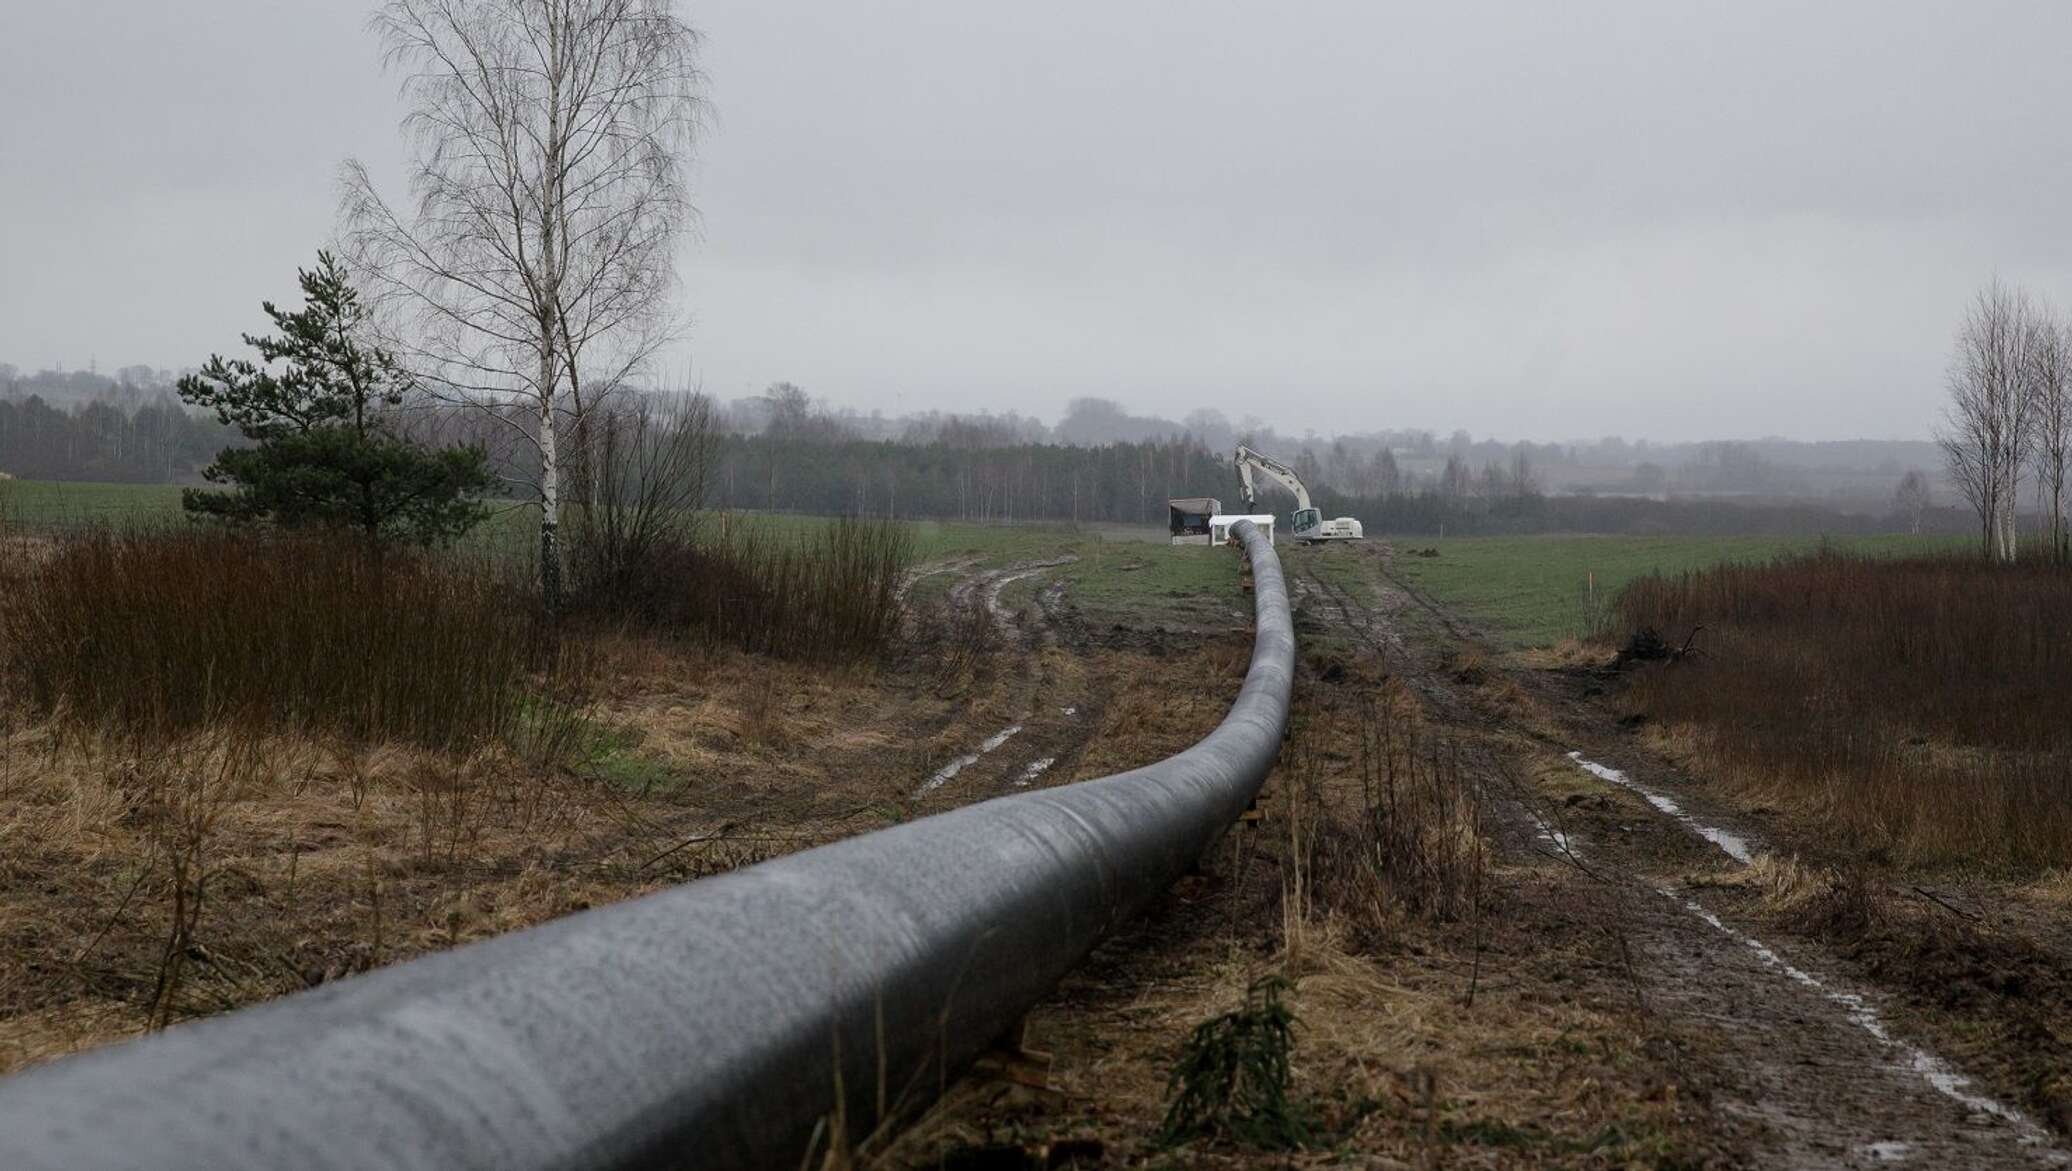 Сайт газопровод. Газопровод GIPL. Польско-Литовский газопровод GIPL. Amber Grid газопровод. Газовая труба Польша.